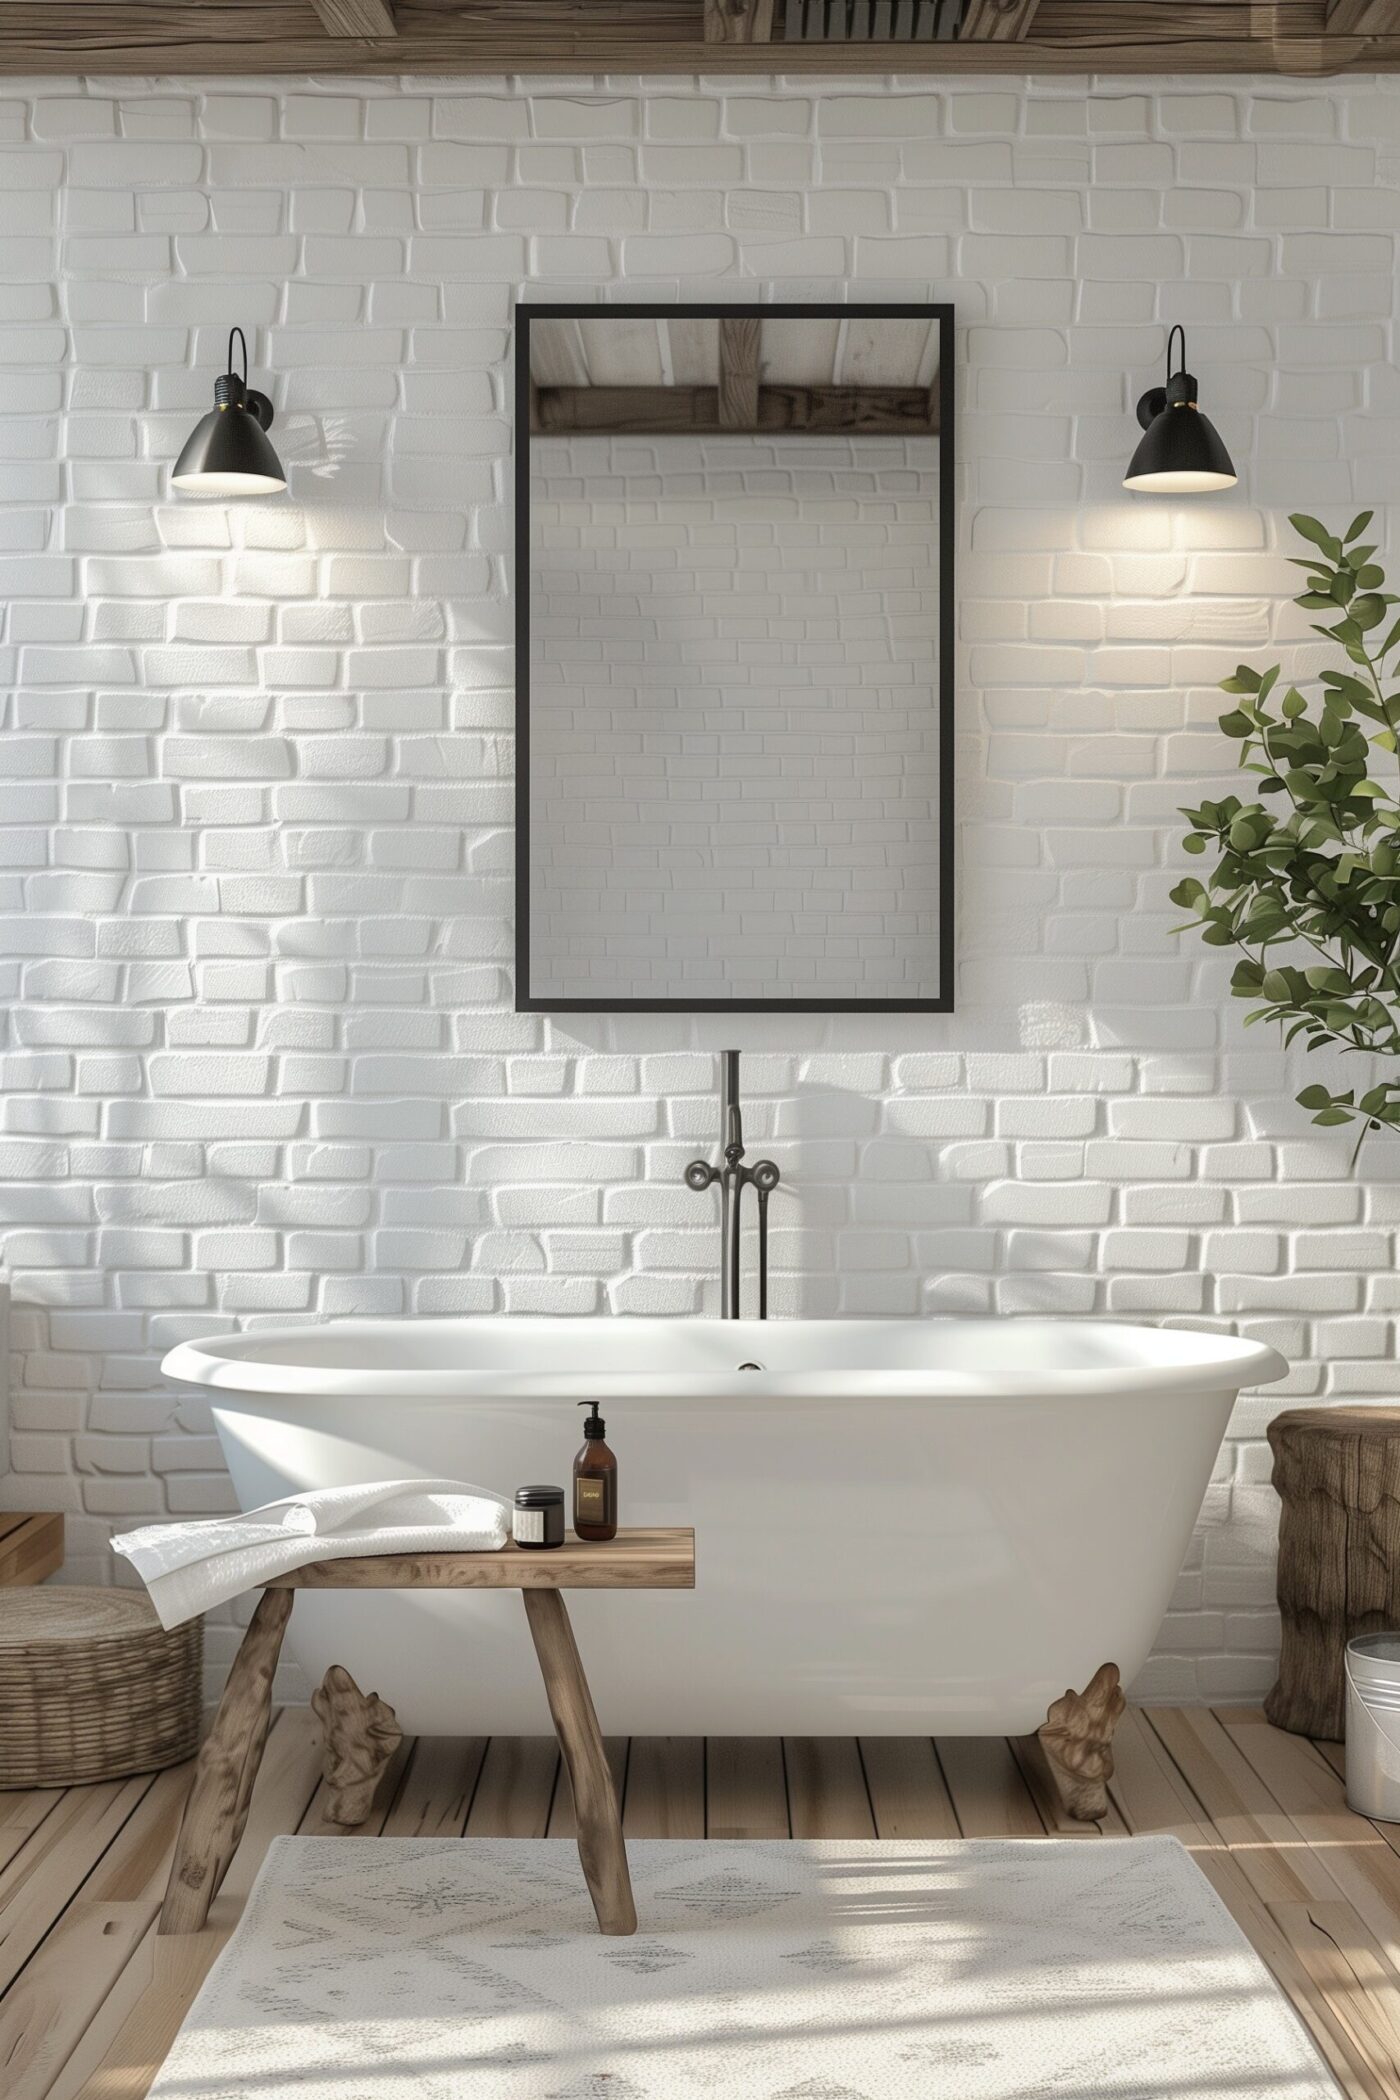 salle de bains blanche retro moderne inspiration hotel luxe